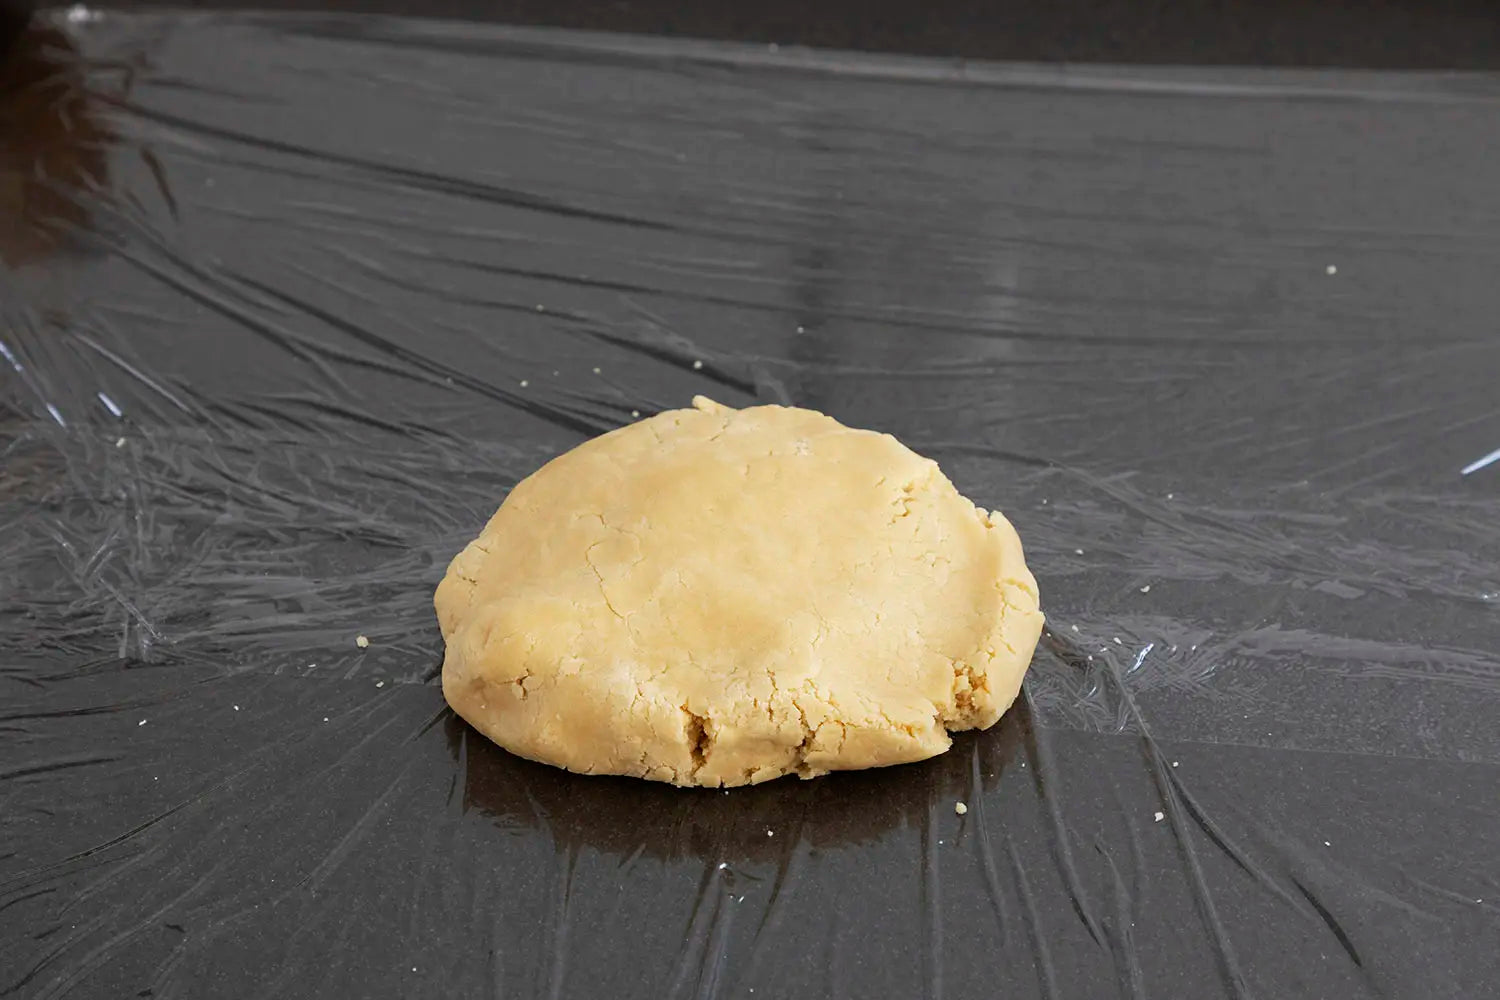 Placing dough on countertop